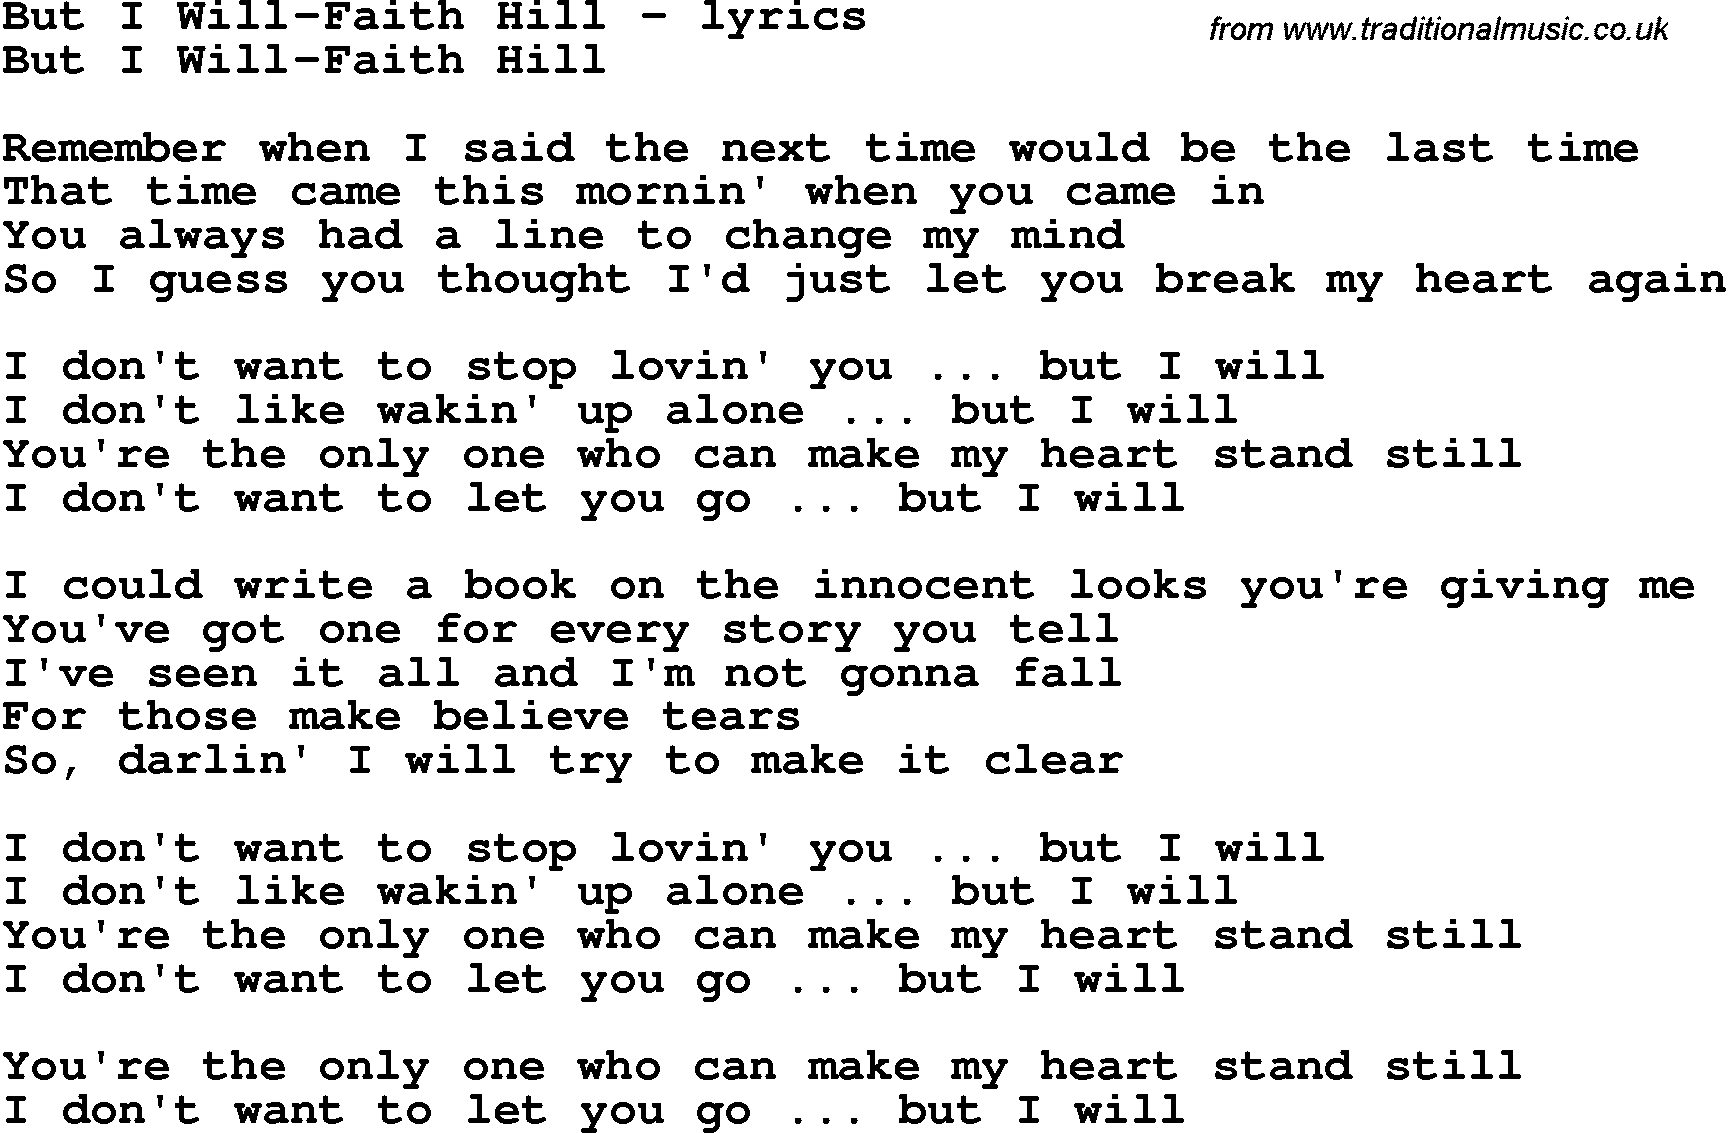 Love Song Lyrics for: But I Will-Faith Hill